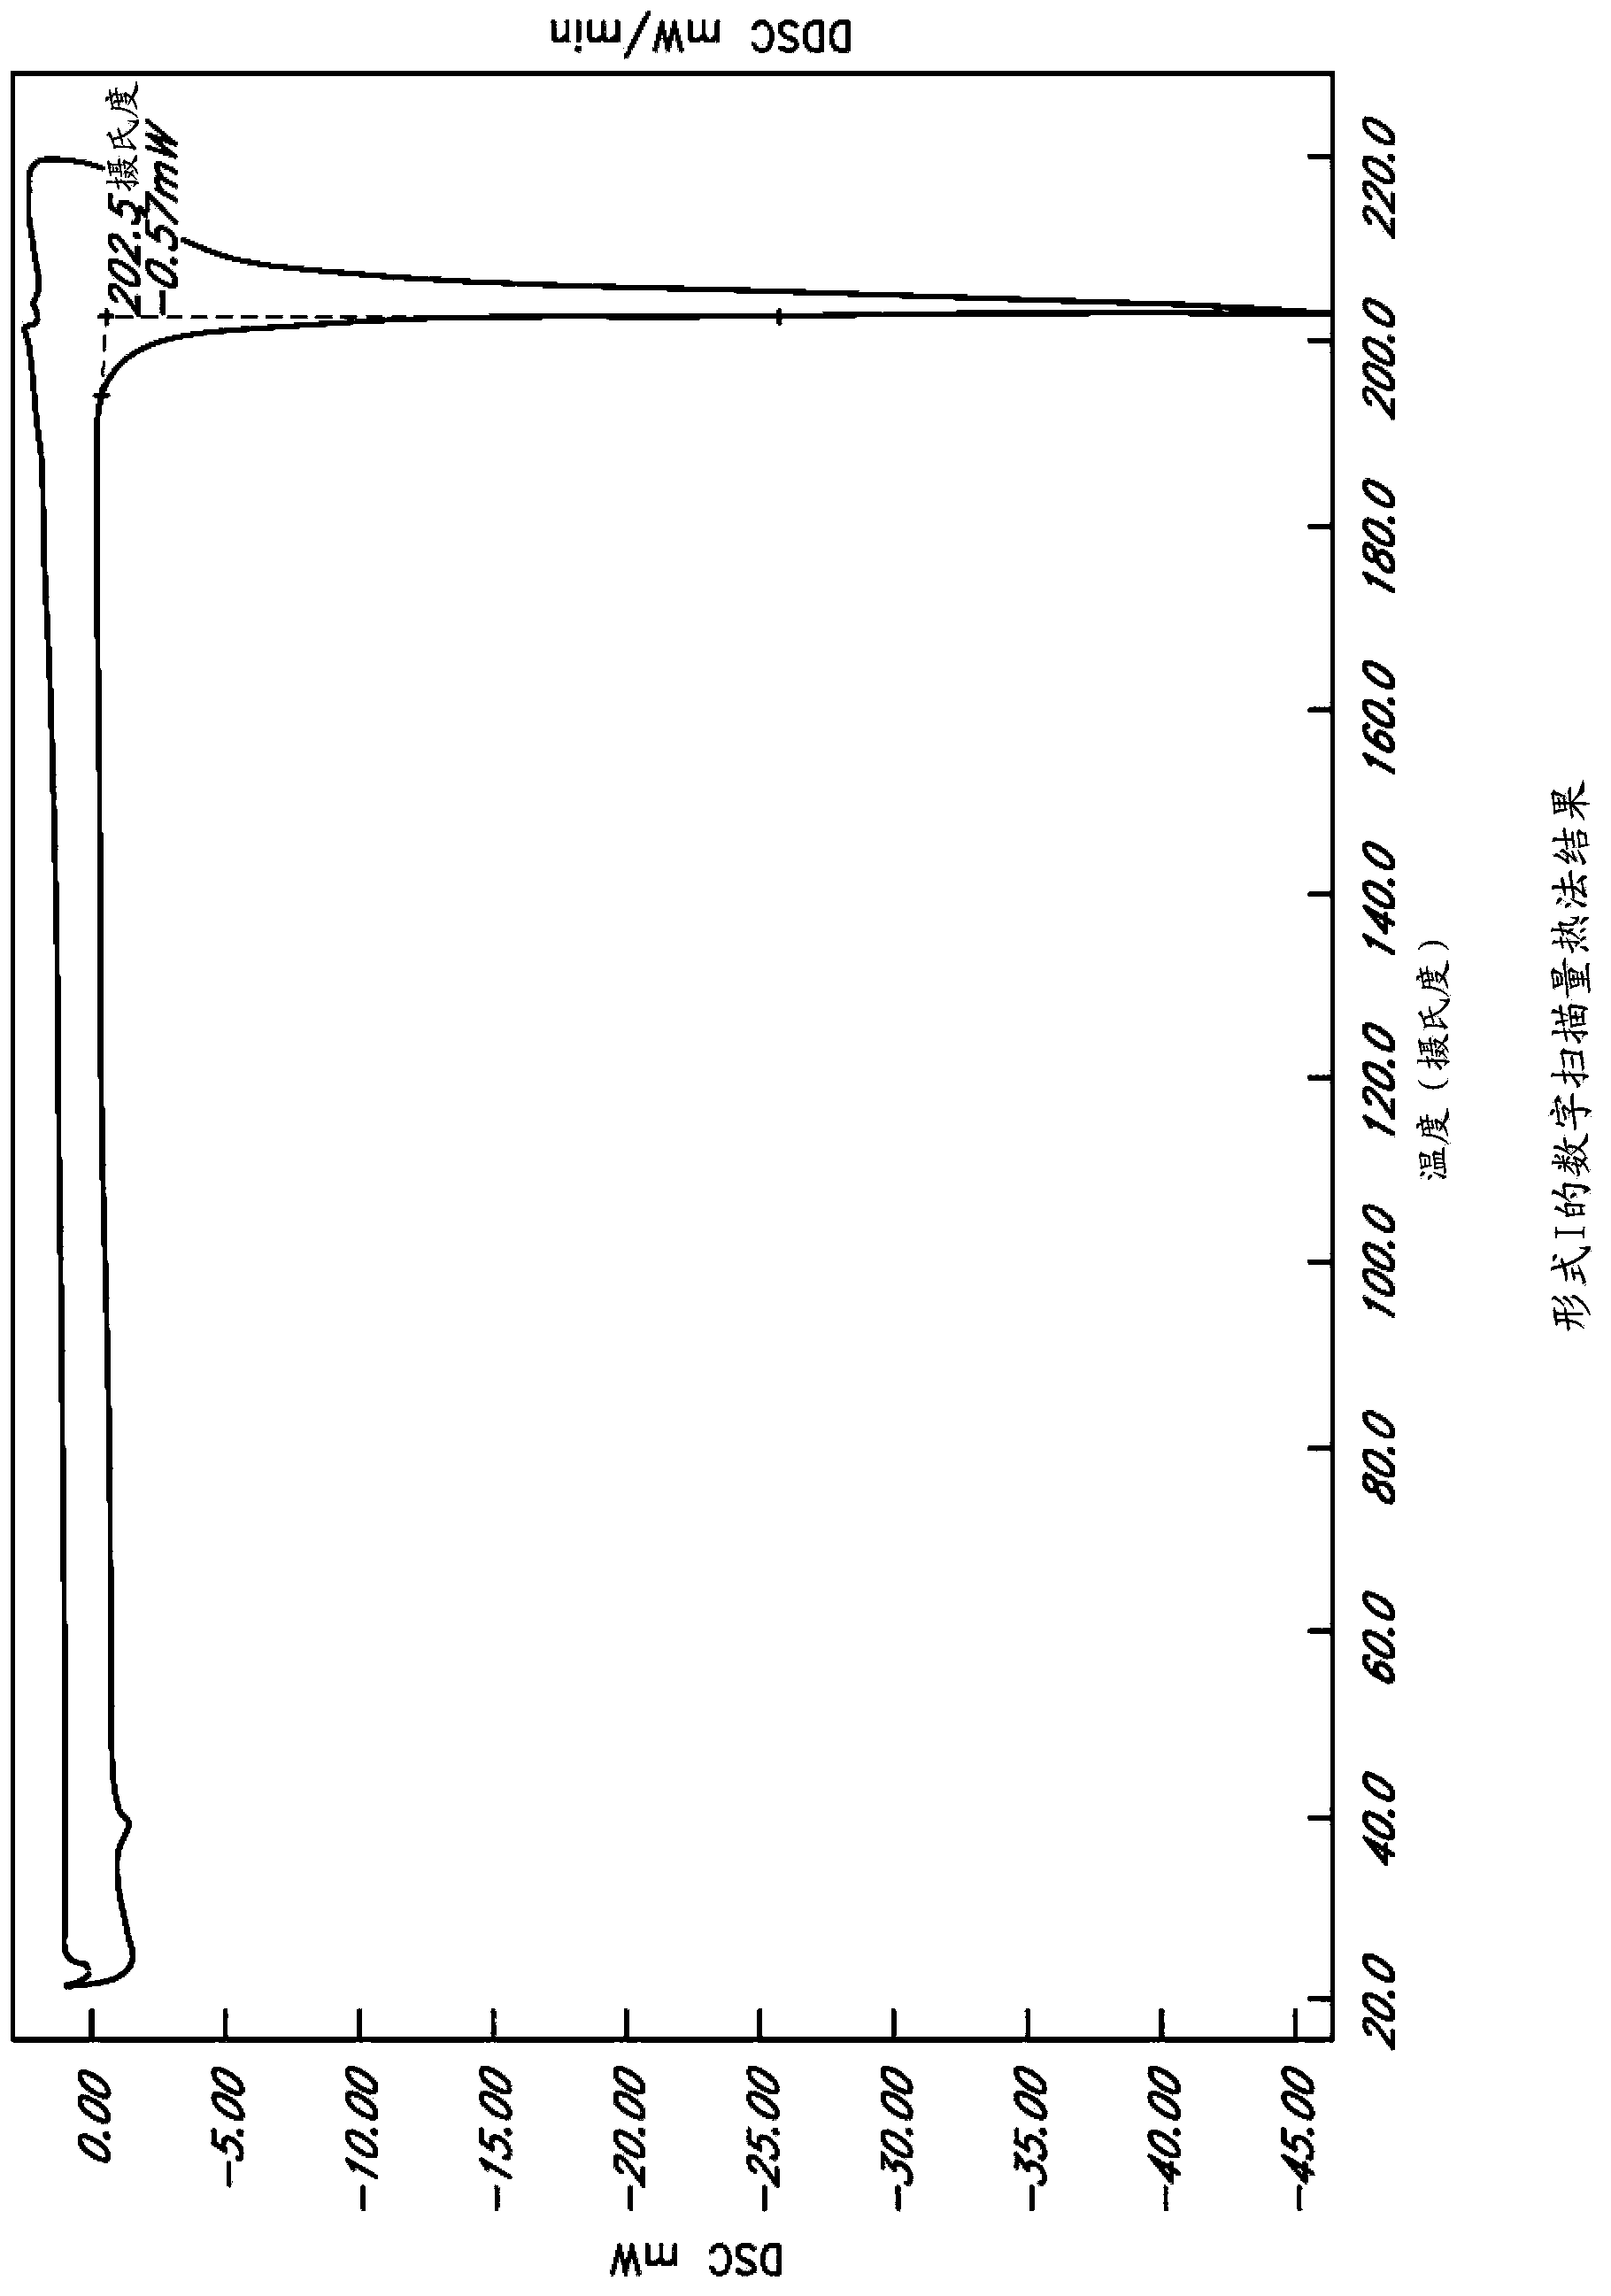 Methods of making L-ornithine phenyl acetate